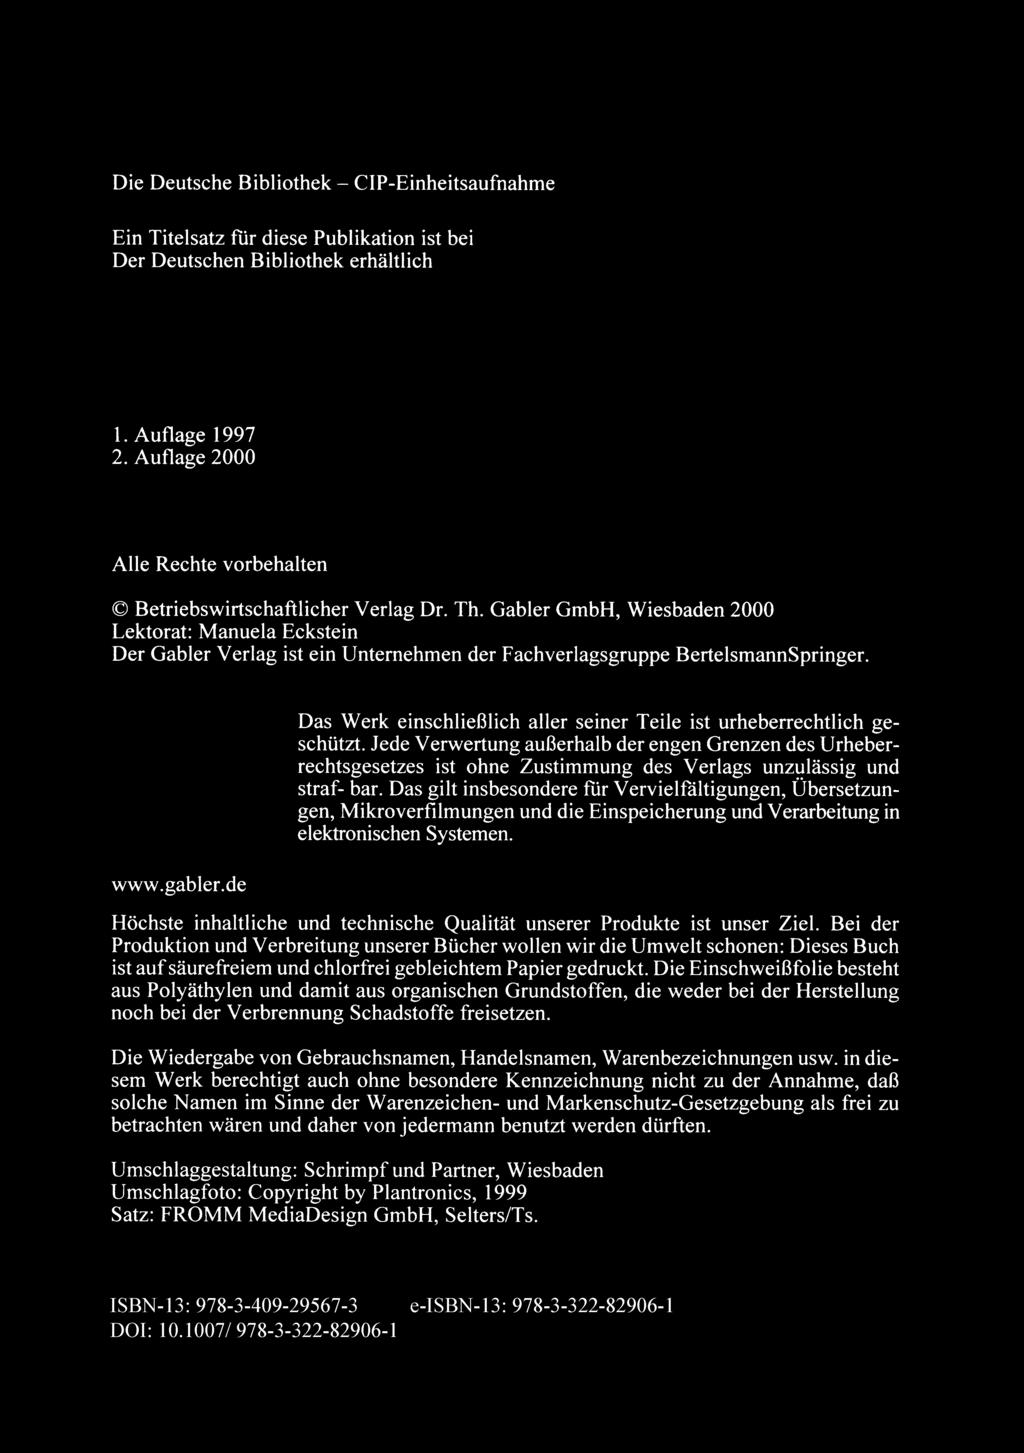 Die Deutsche Bibliothek - CIP-Einheitsaufnahme Ein Titelsatz fur diese Publikation ist bei Der Deutschen Bibliothek erhaltlich I. Auflage 1997 2.